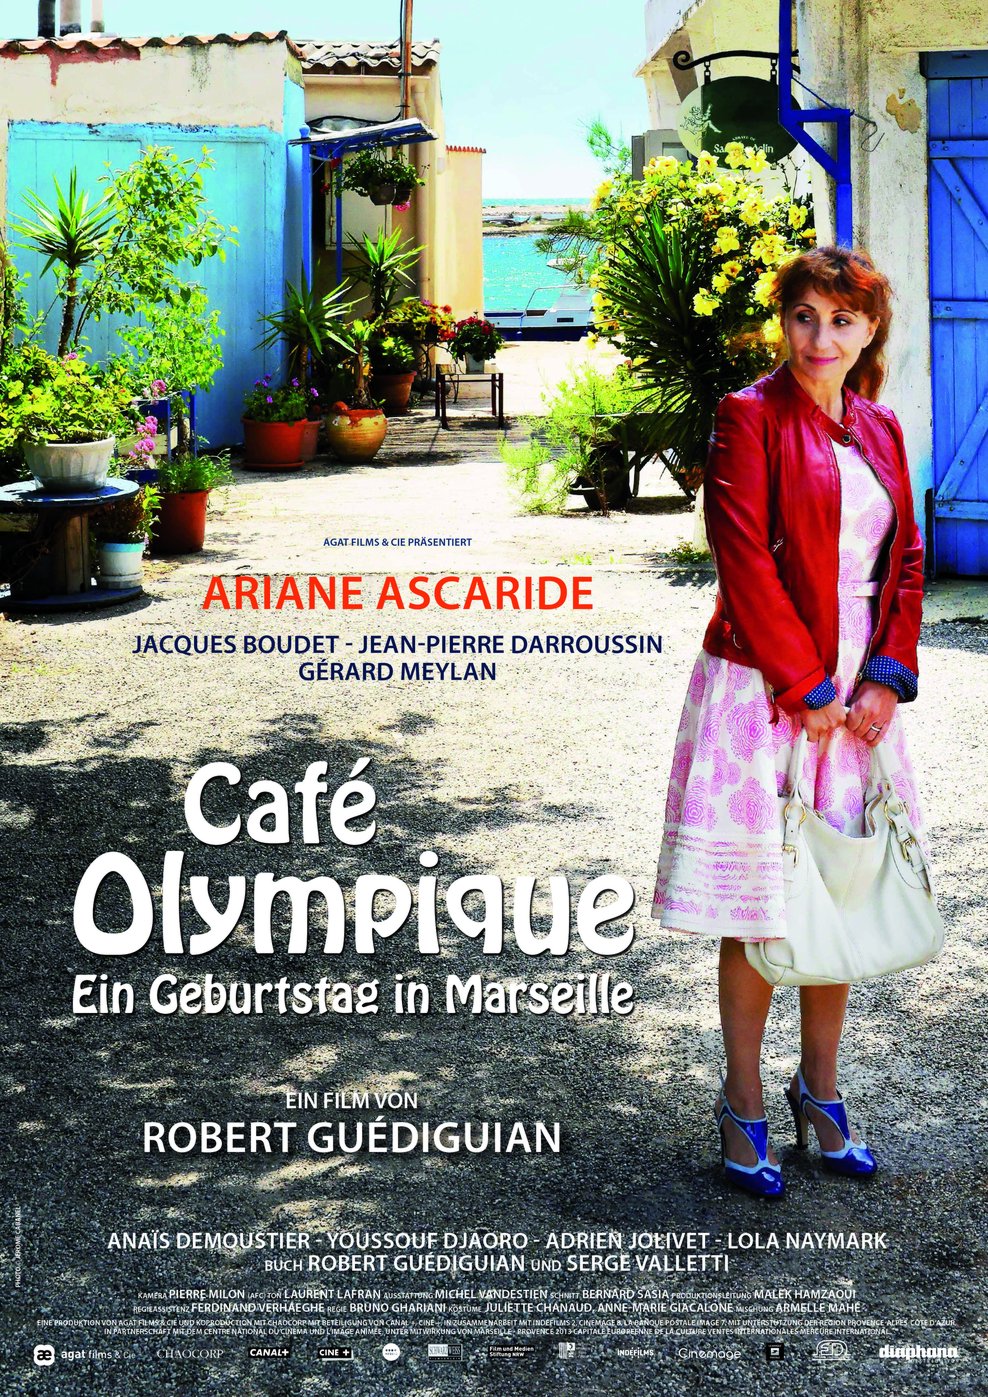 Café Olympique - Ein Geburtstag in Marseille (Poster)